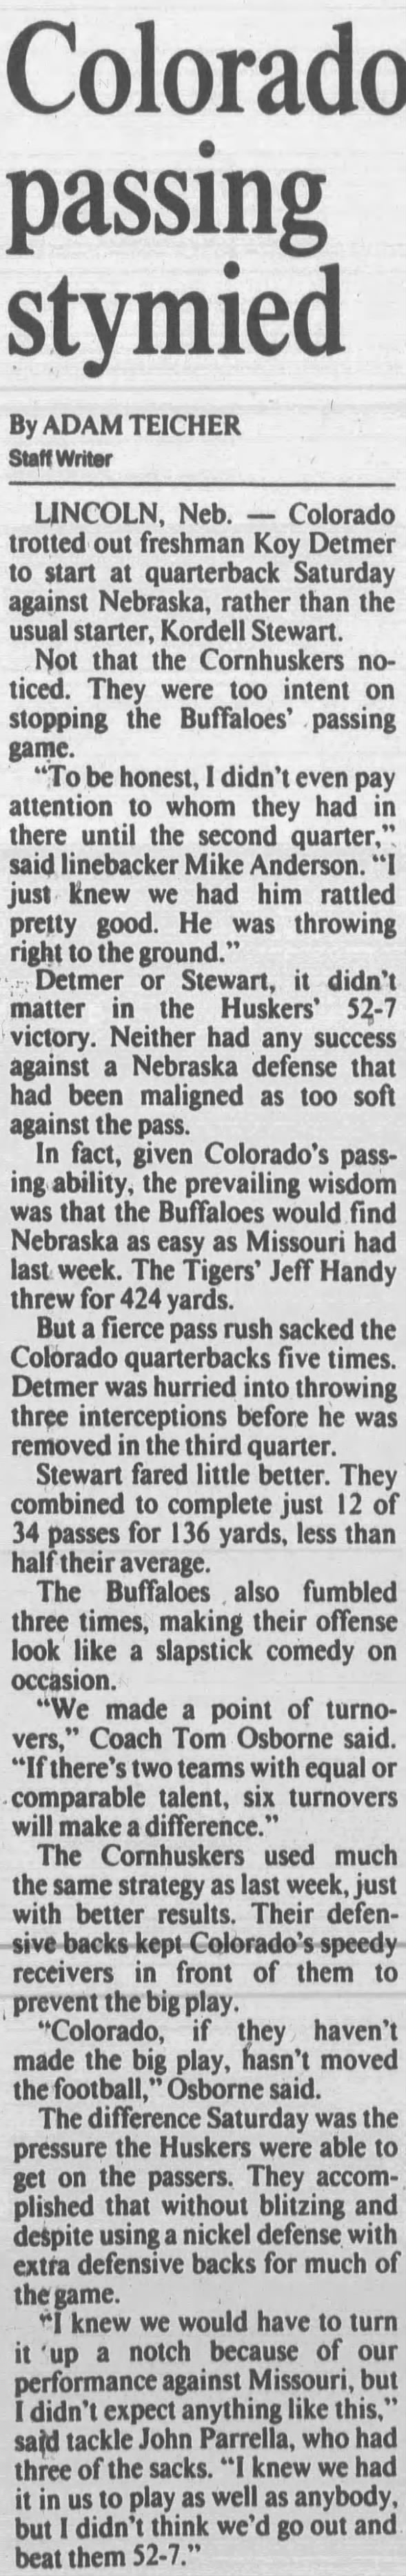 1992 Nebraska-Colorado football, KC3